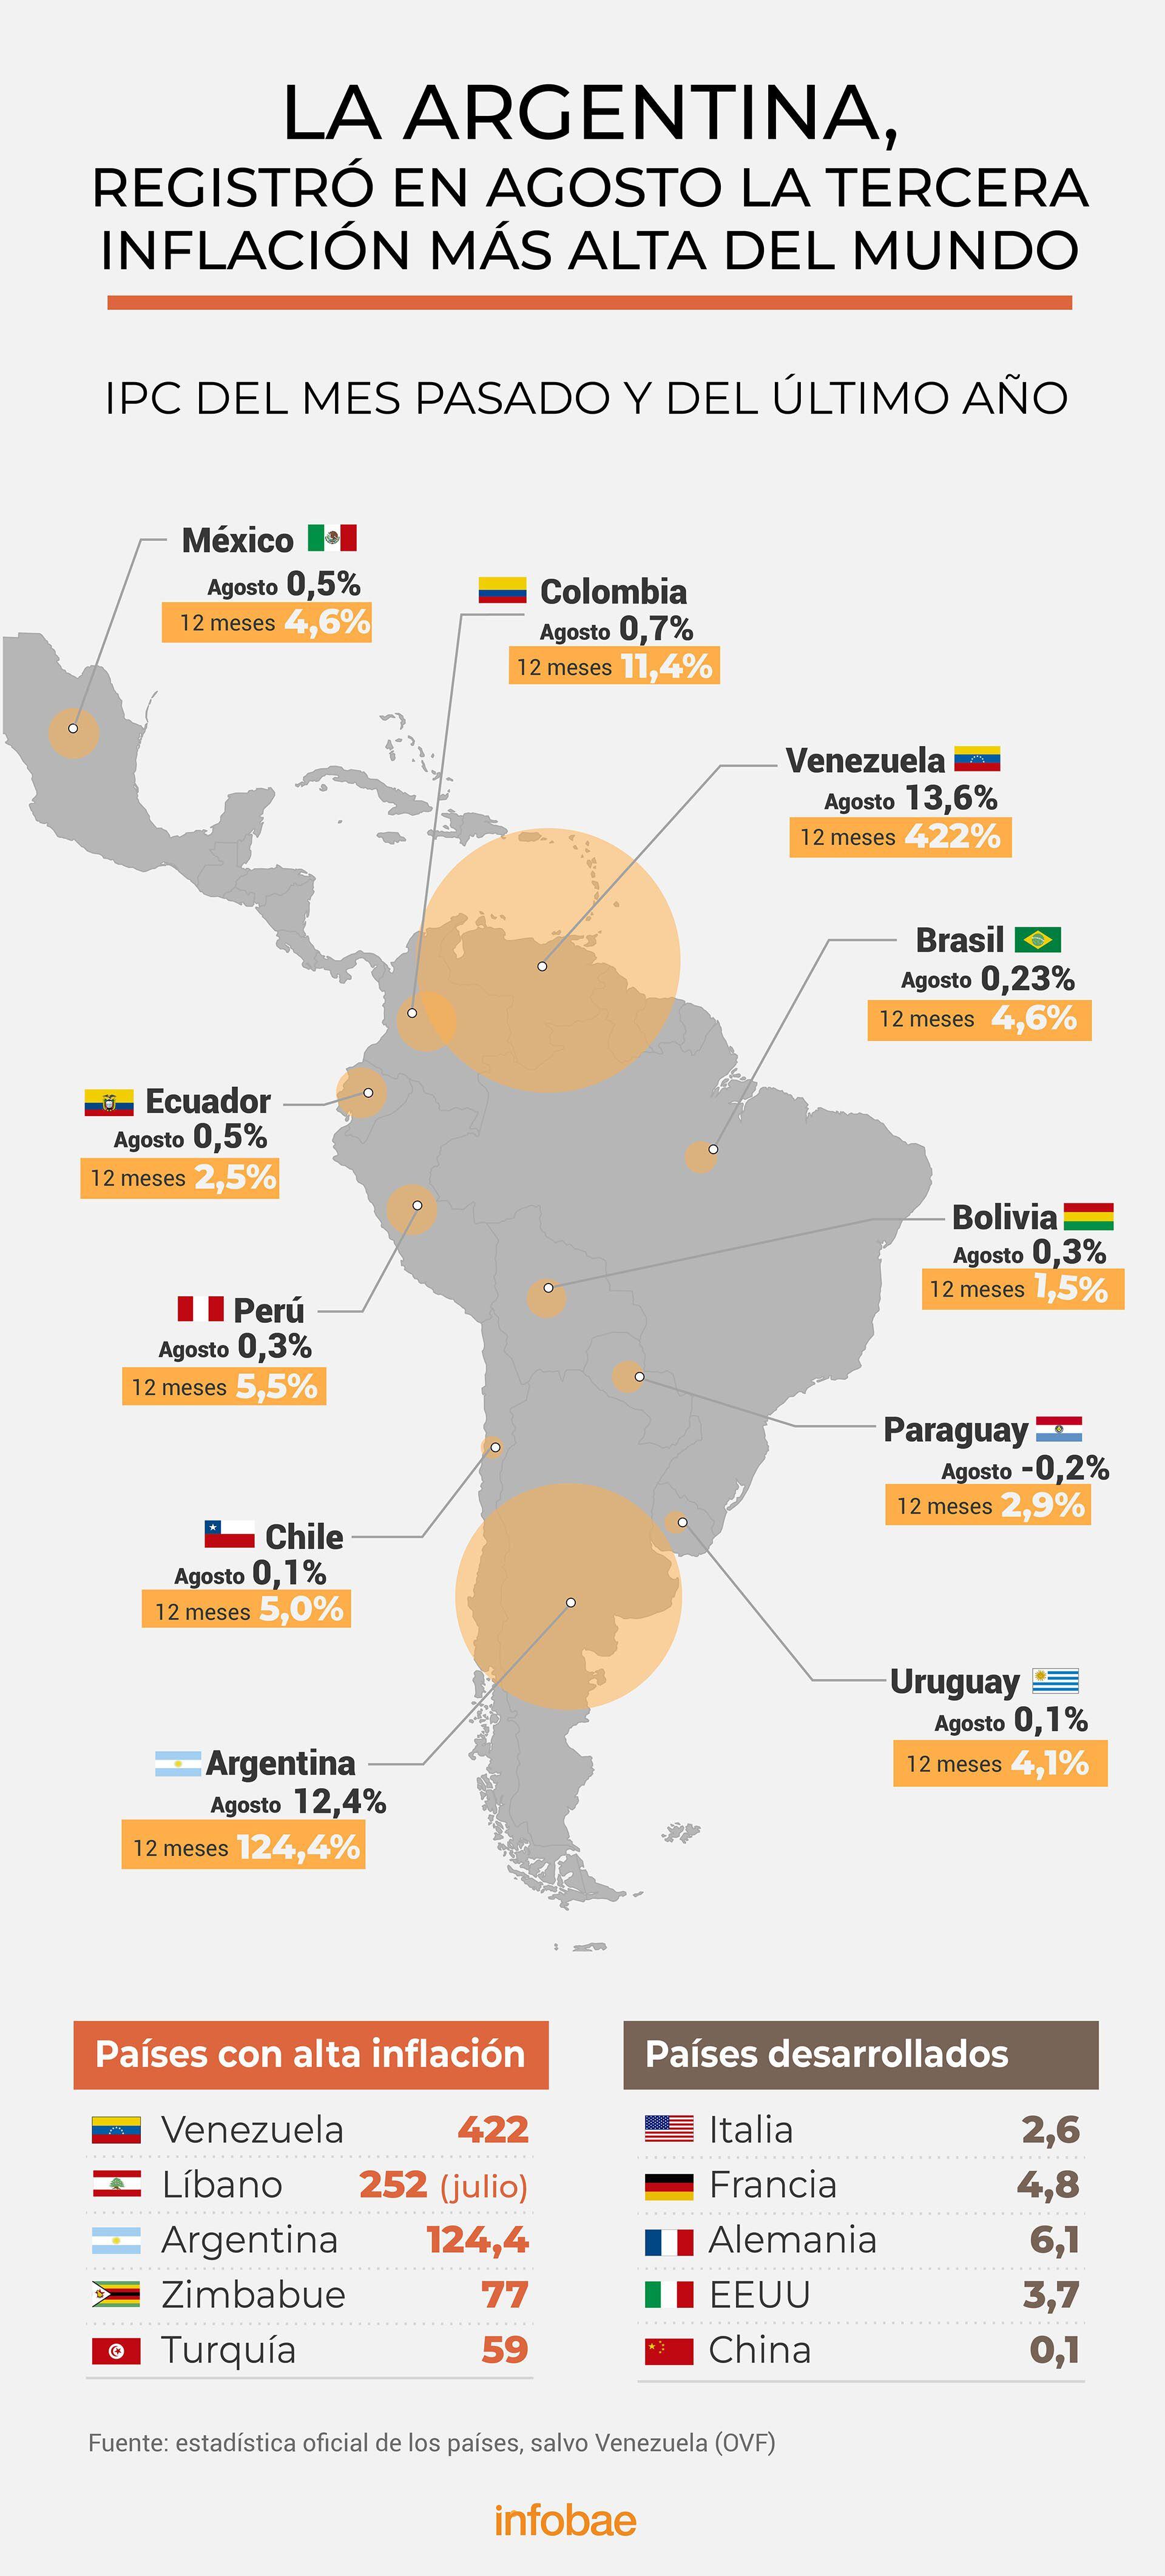 Inflación en agosto y en el último año
Infografía de Marcelo Regalado